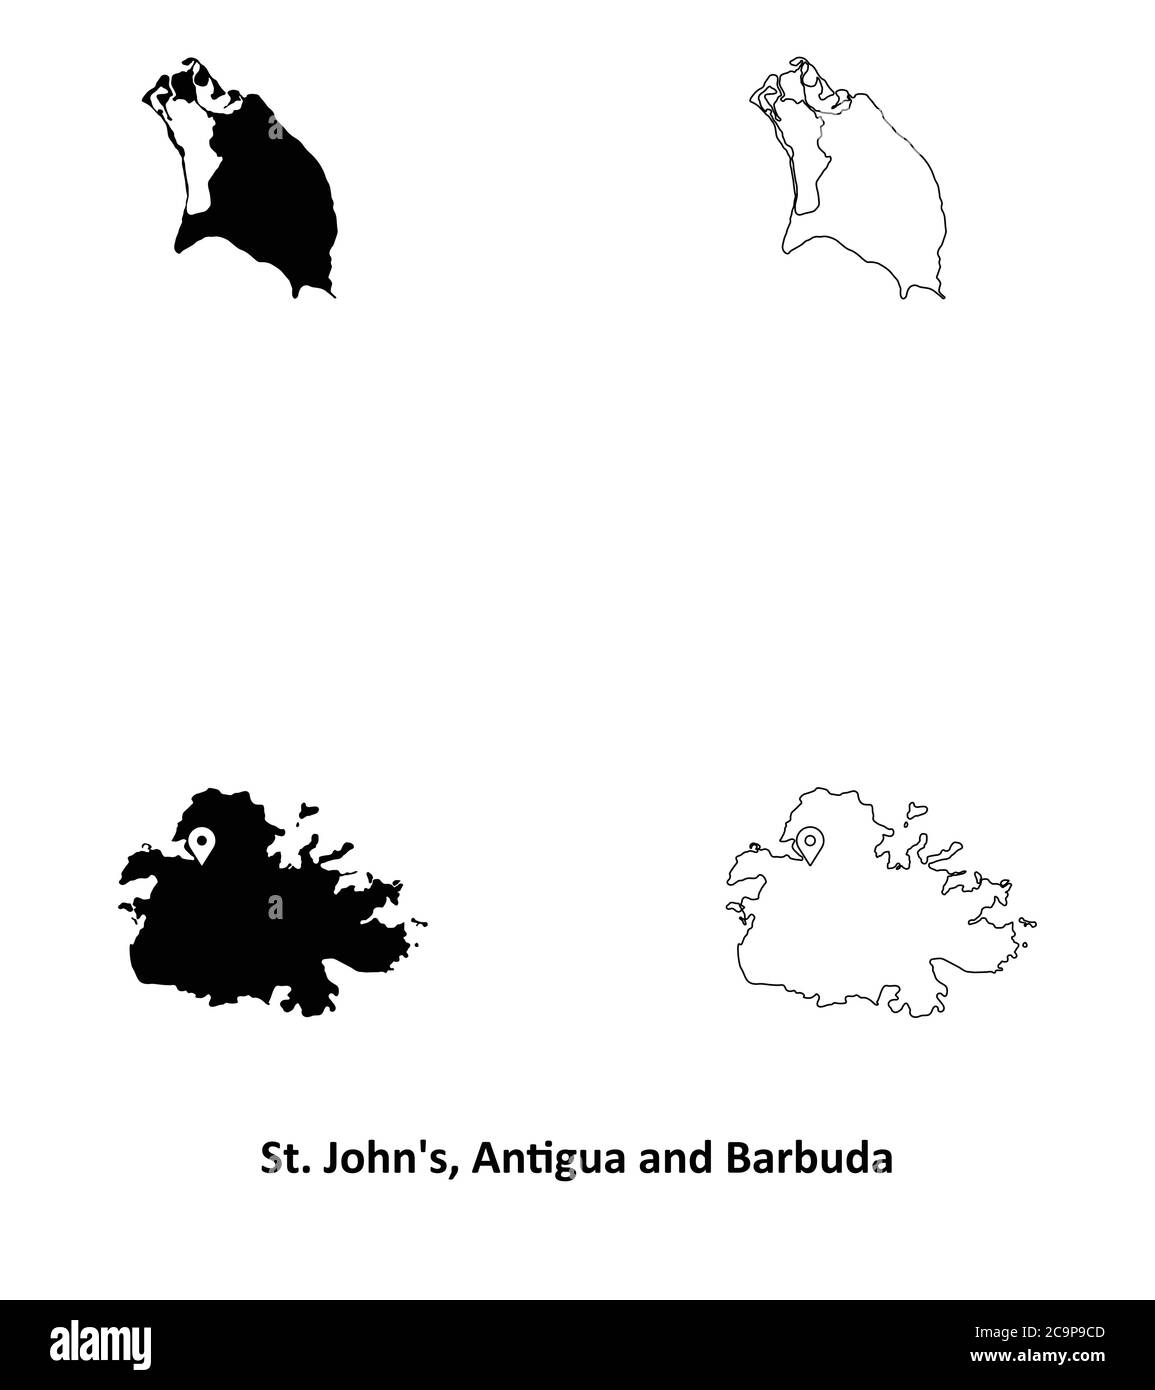 San Giovanni, Antigua e Barbuda. Mappa dettagliata del Paese con il pin della posizione della città capitale. Silhouette nera e mappe di contorno isolate su sfondo bianco. E Illustrazione Vettoriale